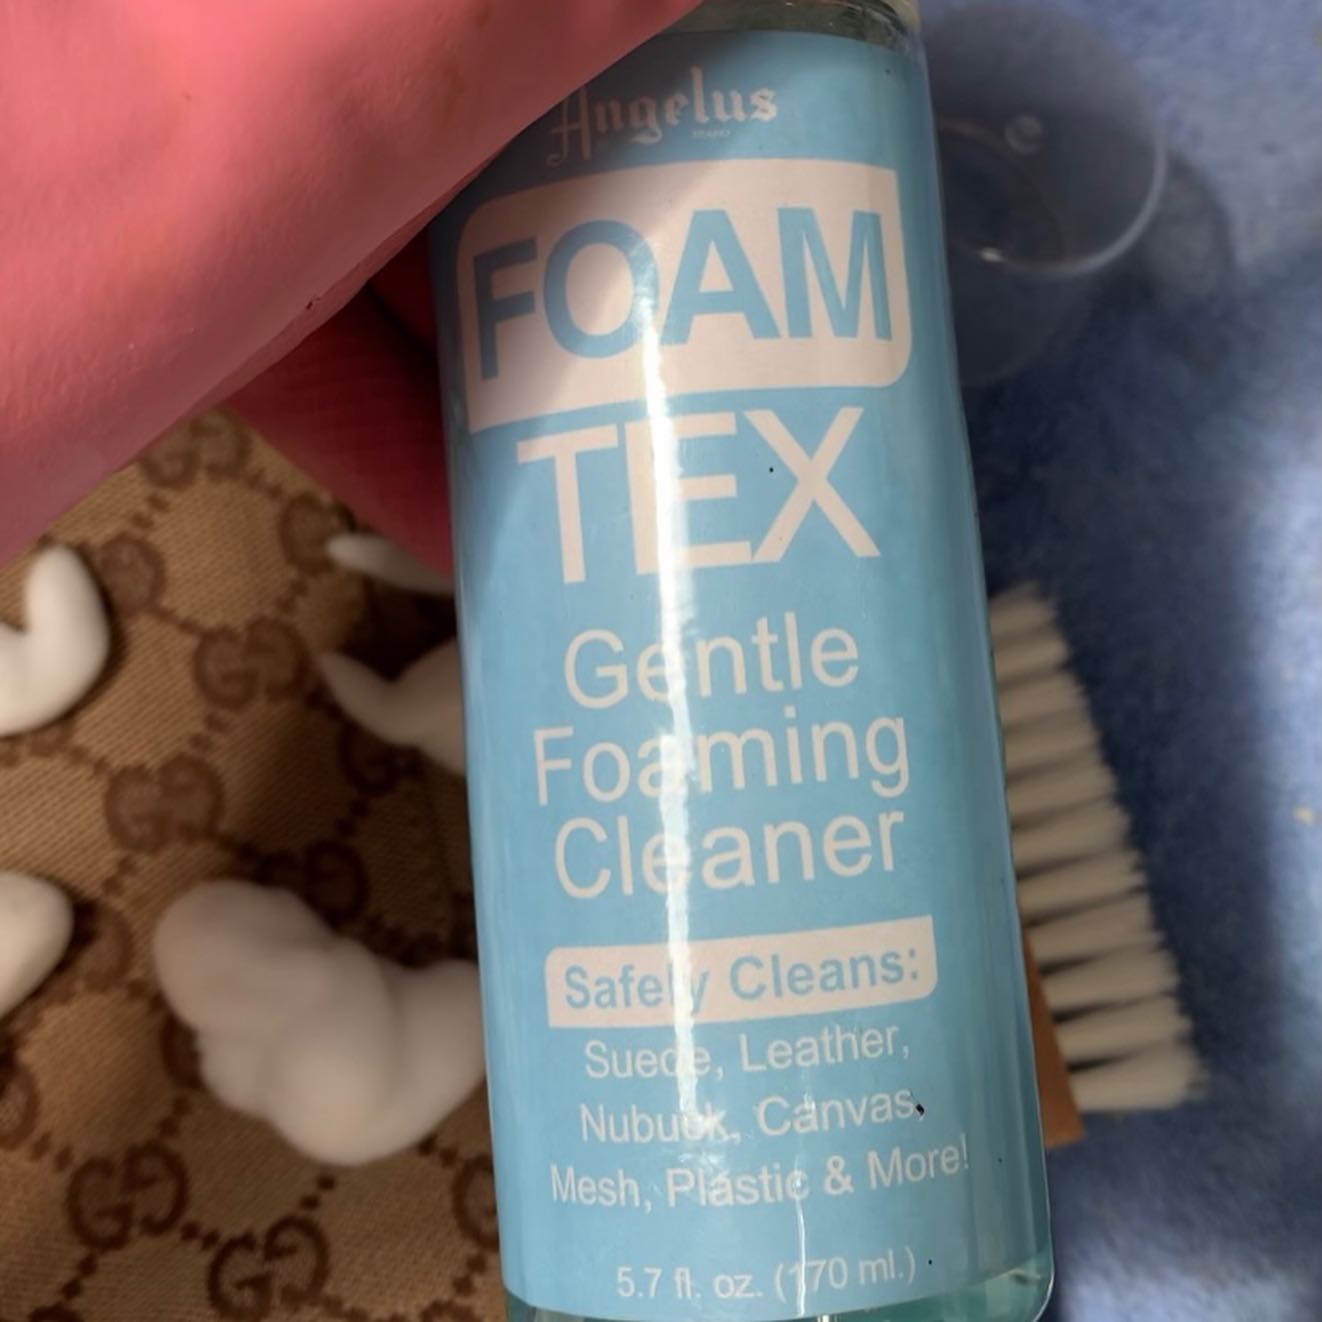 Angelus Foam-Tex Gentle Foaming Cleaner 5.7 oz